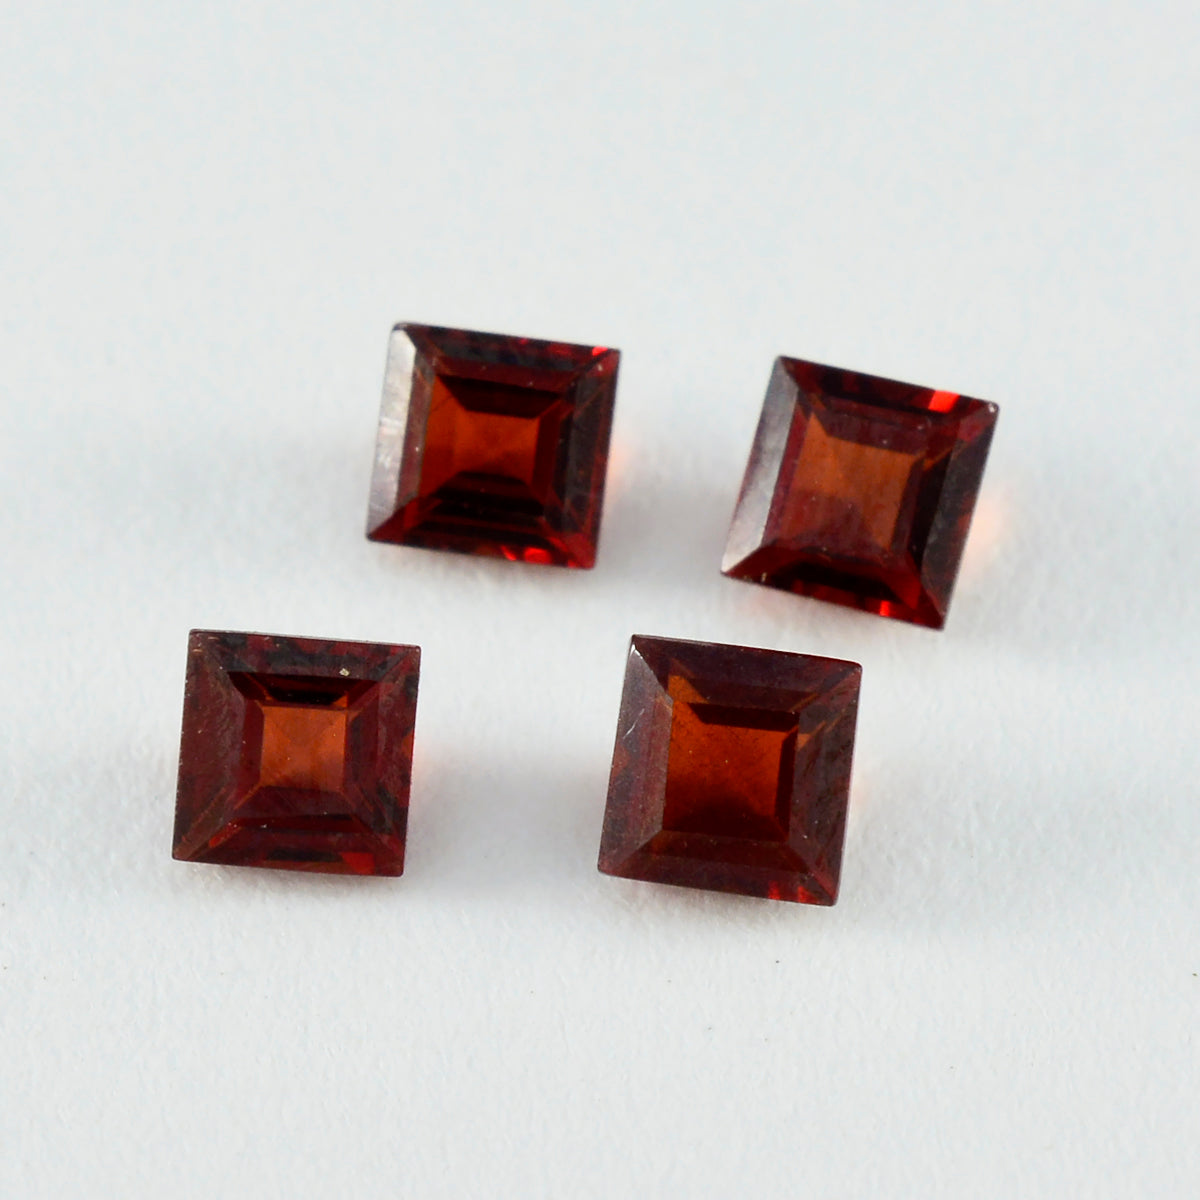 riyogems 1 шт. натуральный красный гранат ограненный 6x6 мм квадратной формы красивые качественные драгоценные камни